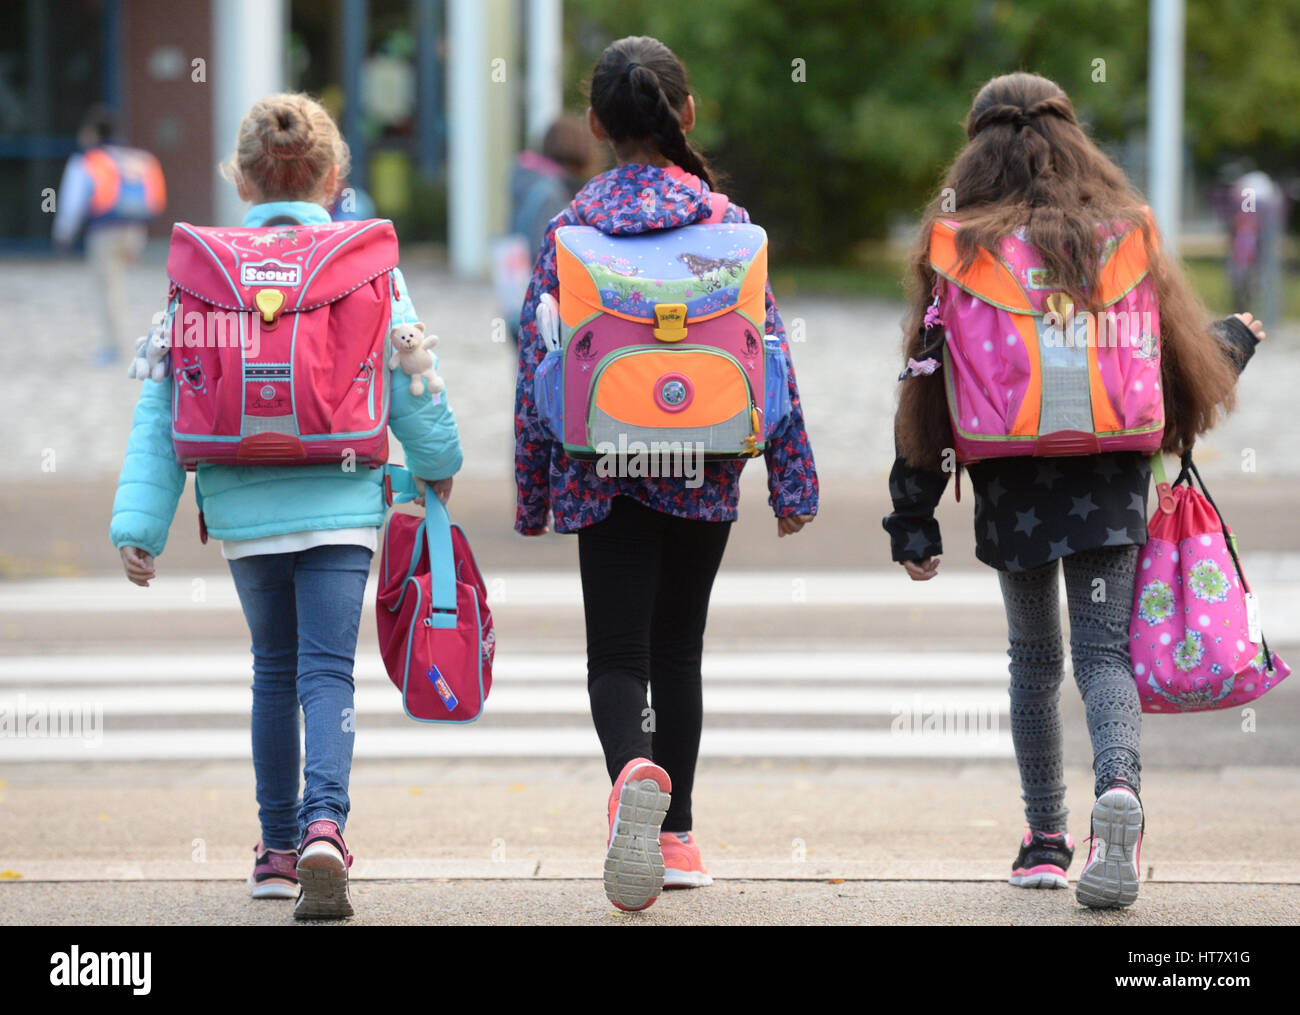 ARCHIV - Drei Schülerinnen laufen am 14.09.2015 in Freiburg (Bade-Wurtemberg) mit ihren Schulranzen zur Schule. (Zu dpa "RMV-Aufsichtsrat berät über Schülerticket" vom 08.03.2017) Photo : Patrick Seeger/dpa  + + +(c) afp - Bildfunk + + + Banque D'Images